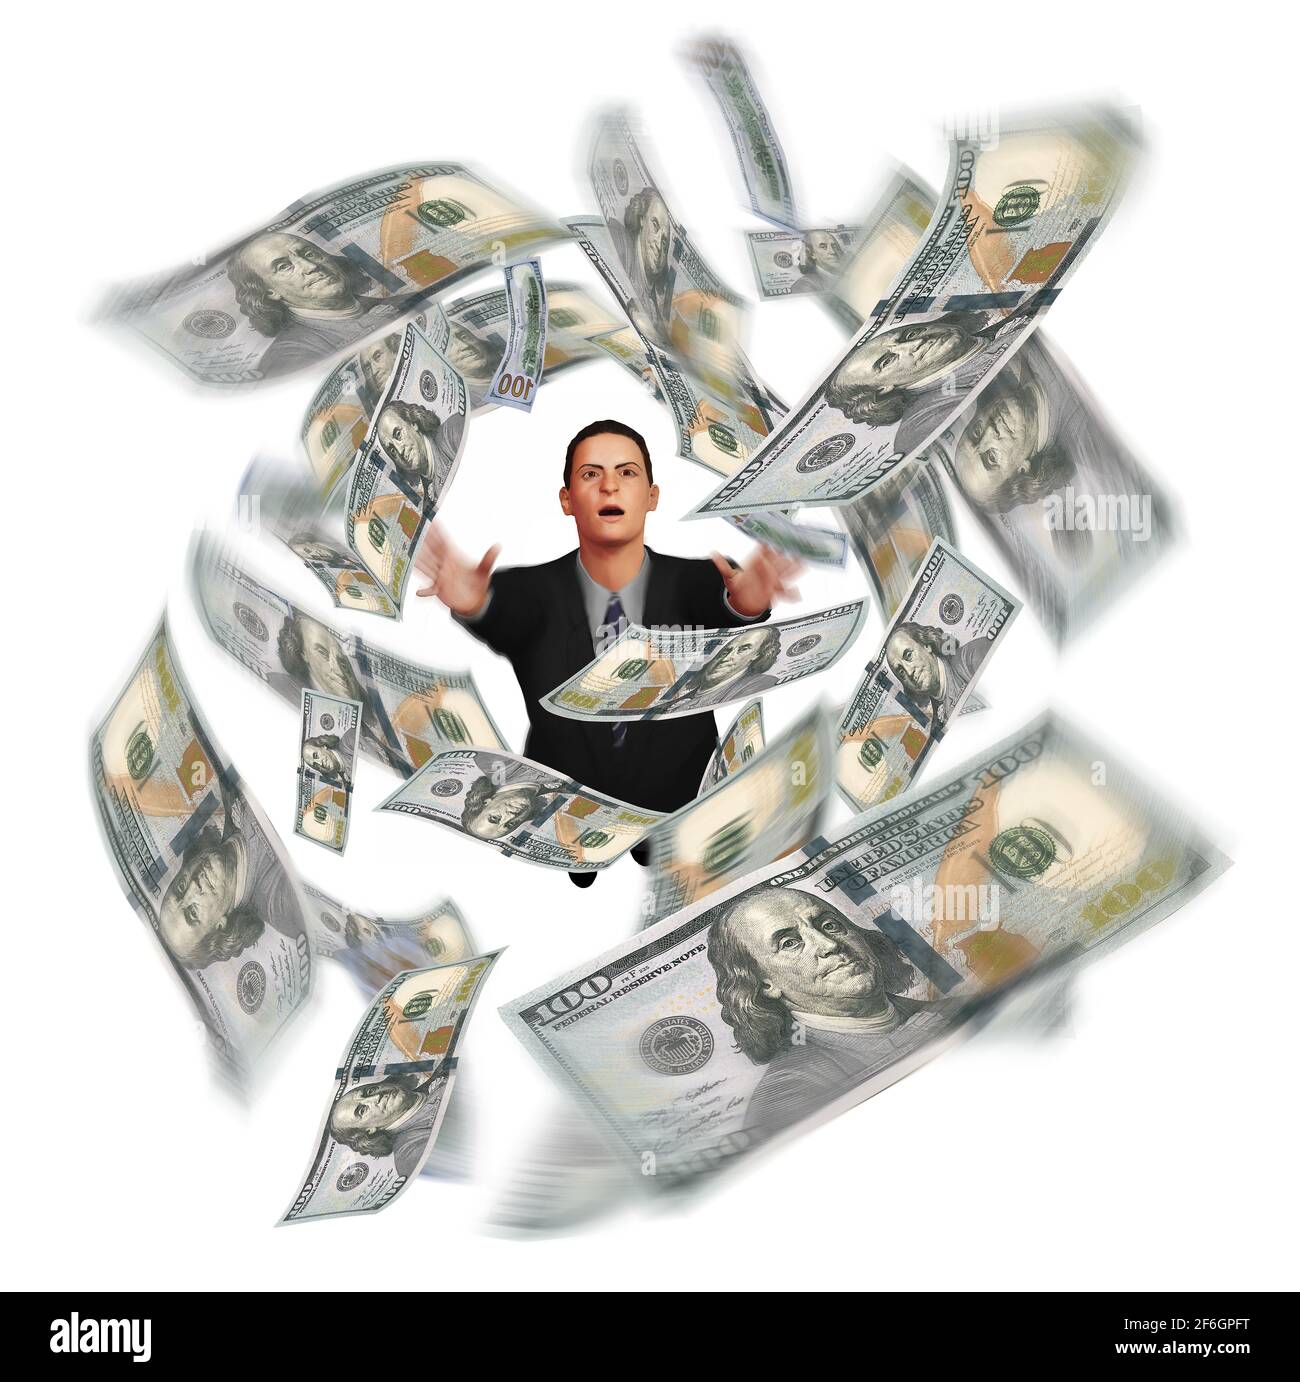 Ein Mann in einem Geschäftsanzug greift nach hundert Dollar-Scheinen, die in dieser 3-D-Illustration über die Unfähigkeit des Geldes über den Kopf wirbeln. Stockfoto